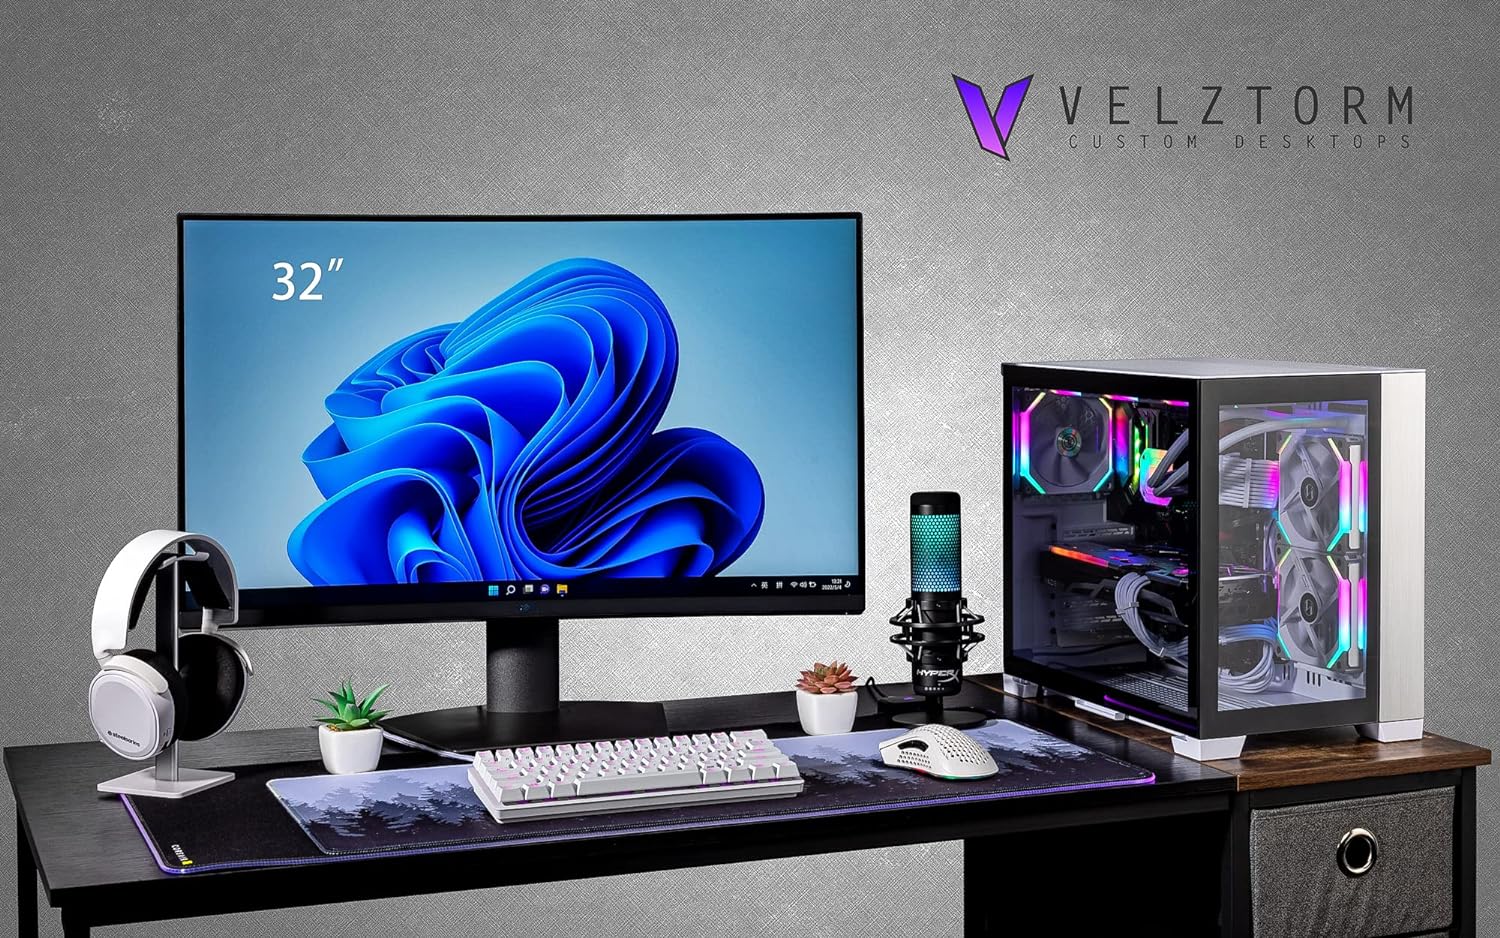 Velztorm Mini Lux Gaming Desktop PC (AMD Ryzen 9 5950X 16-Core, Radeon RX 7900 XTX, 32GB RAM, 2TB PCIe SSD + 6TB HDD (3.5), WiFi, USB 3.2, HDMI, Display Port, Win 10 Home)